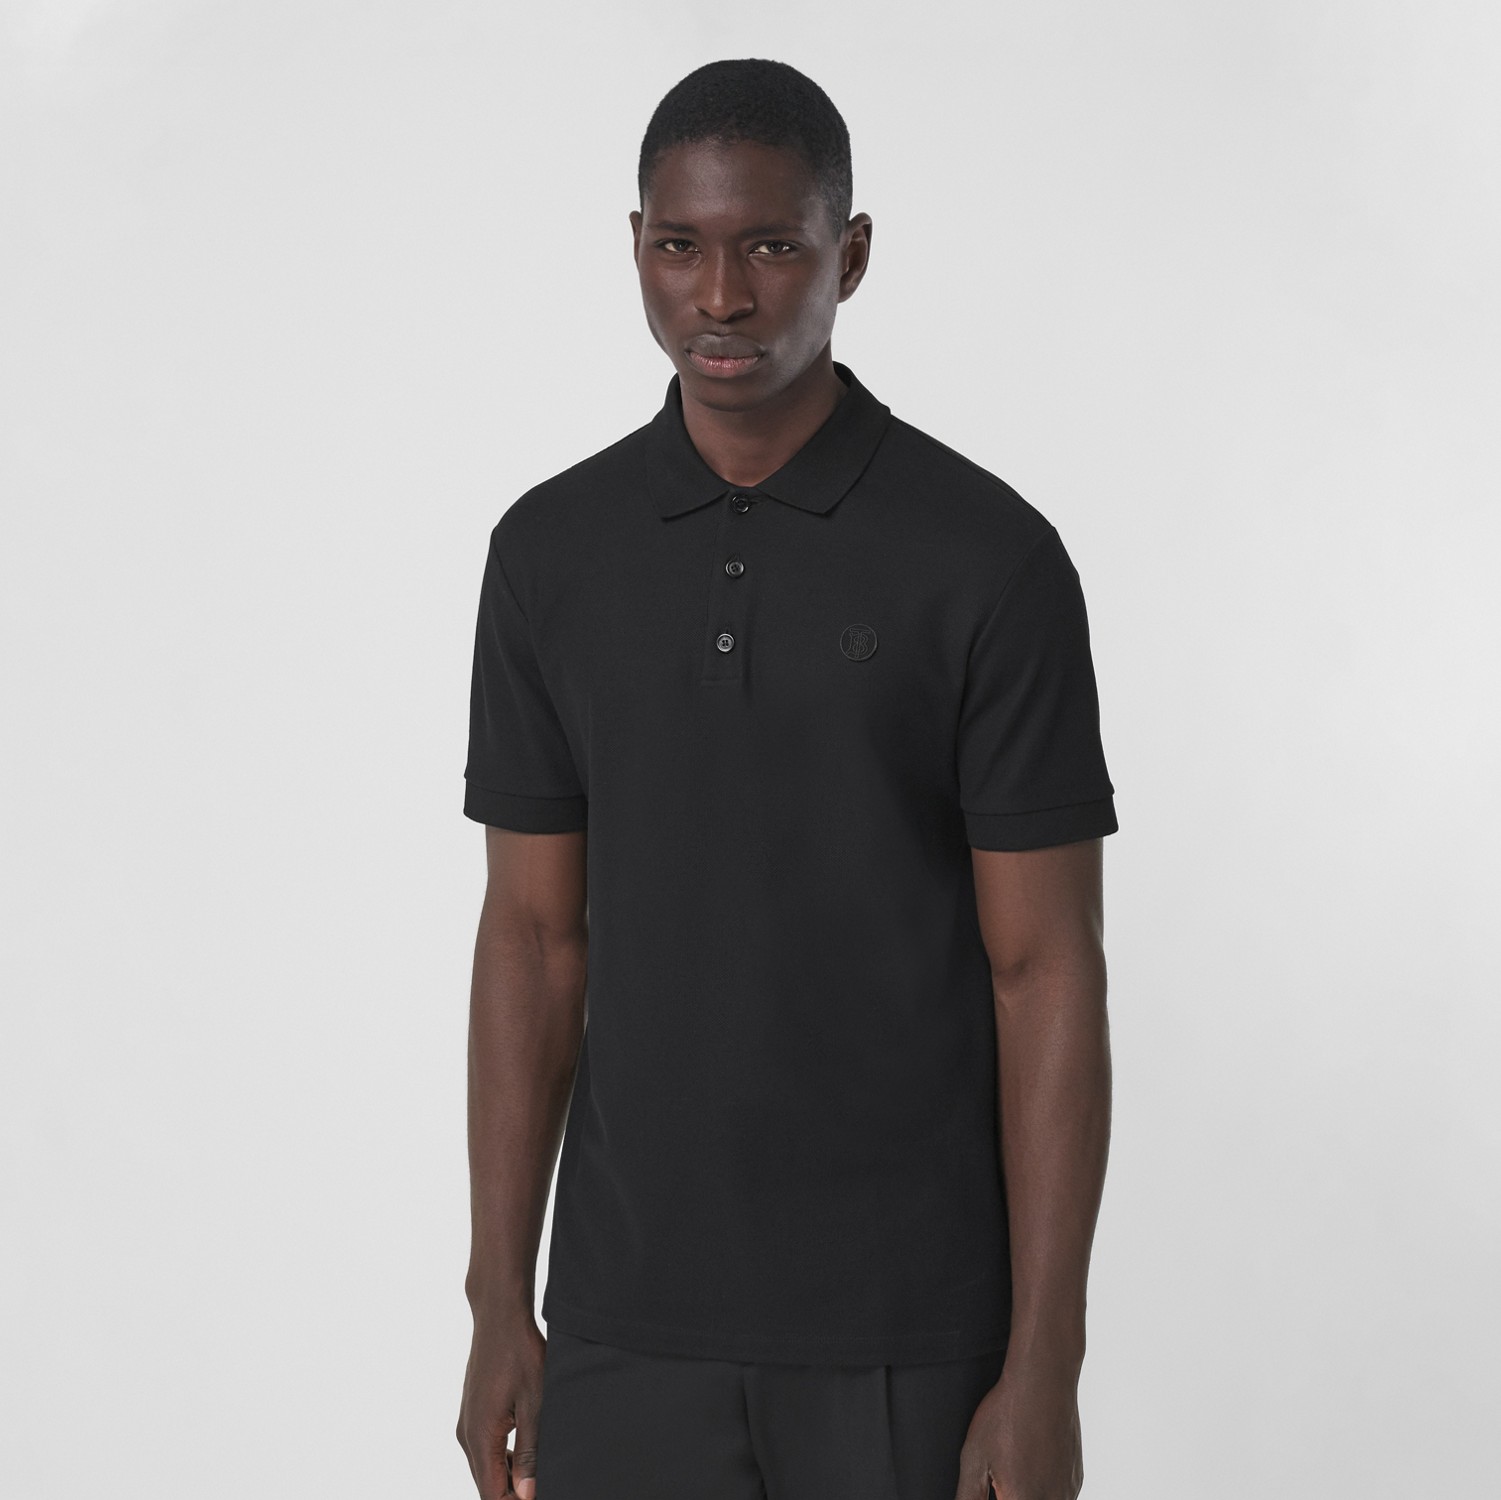 モノグラムモチーフ コットンピケ ポロシャツ (ブラック) - メンズ | Burberry®公式サイト